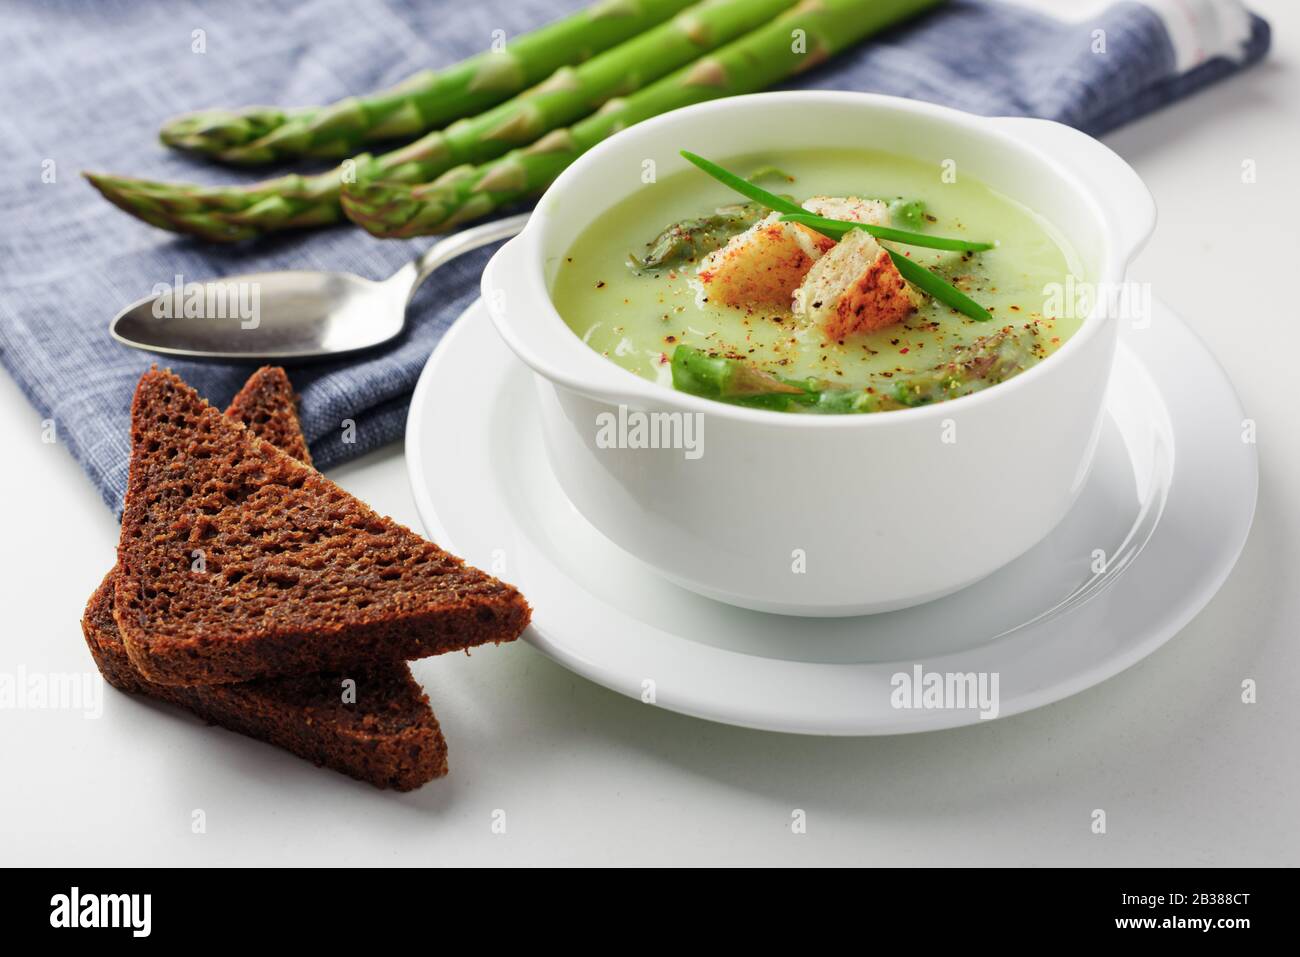 Zuppa di asparagi con pane nero in bianco ciotola closeup. Fotografia di cibo Foto Stock